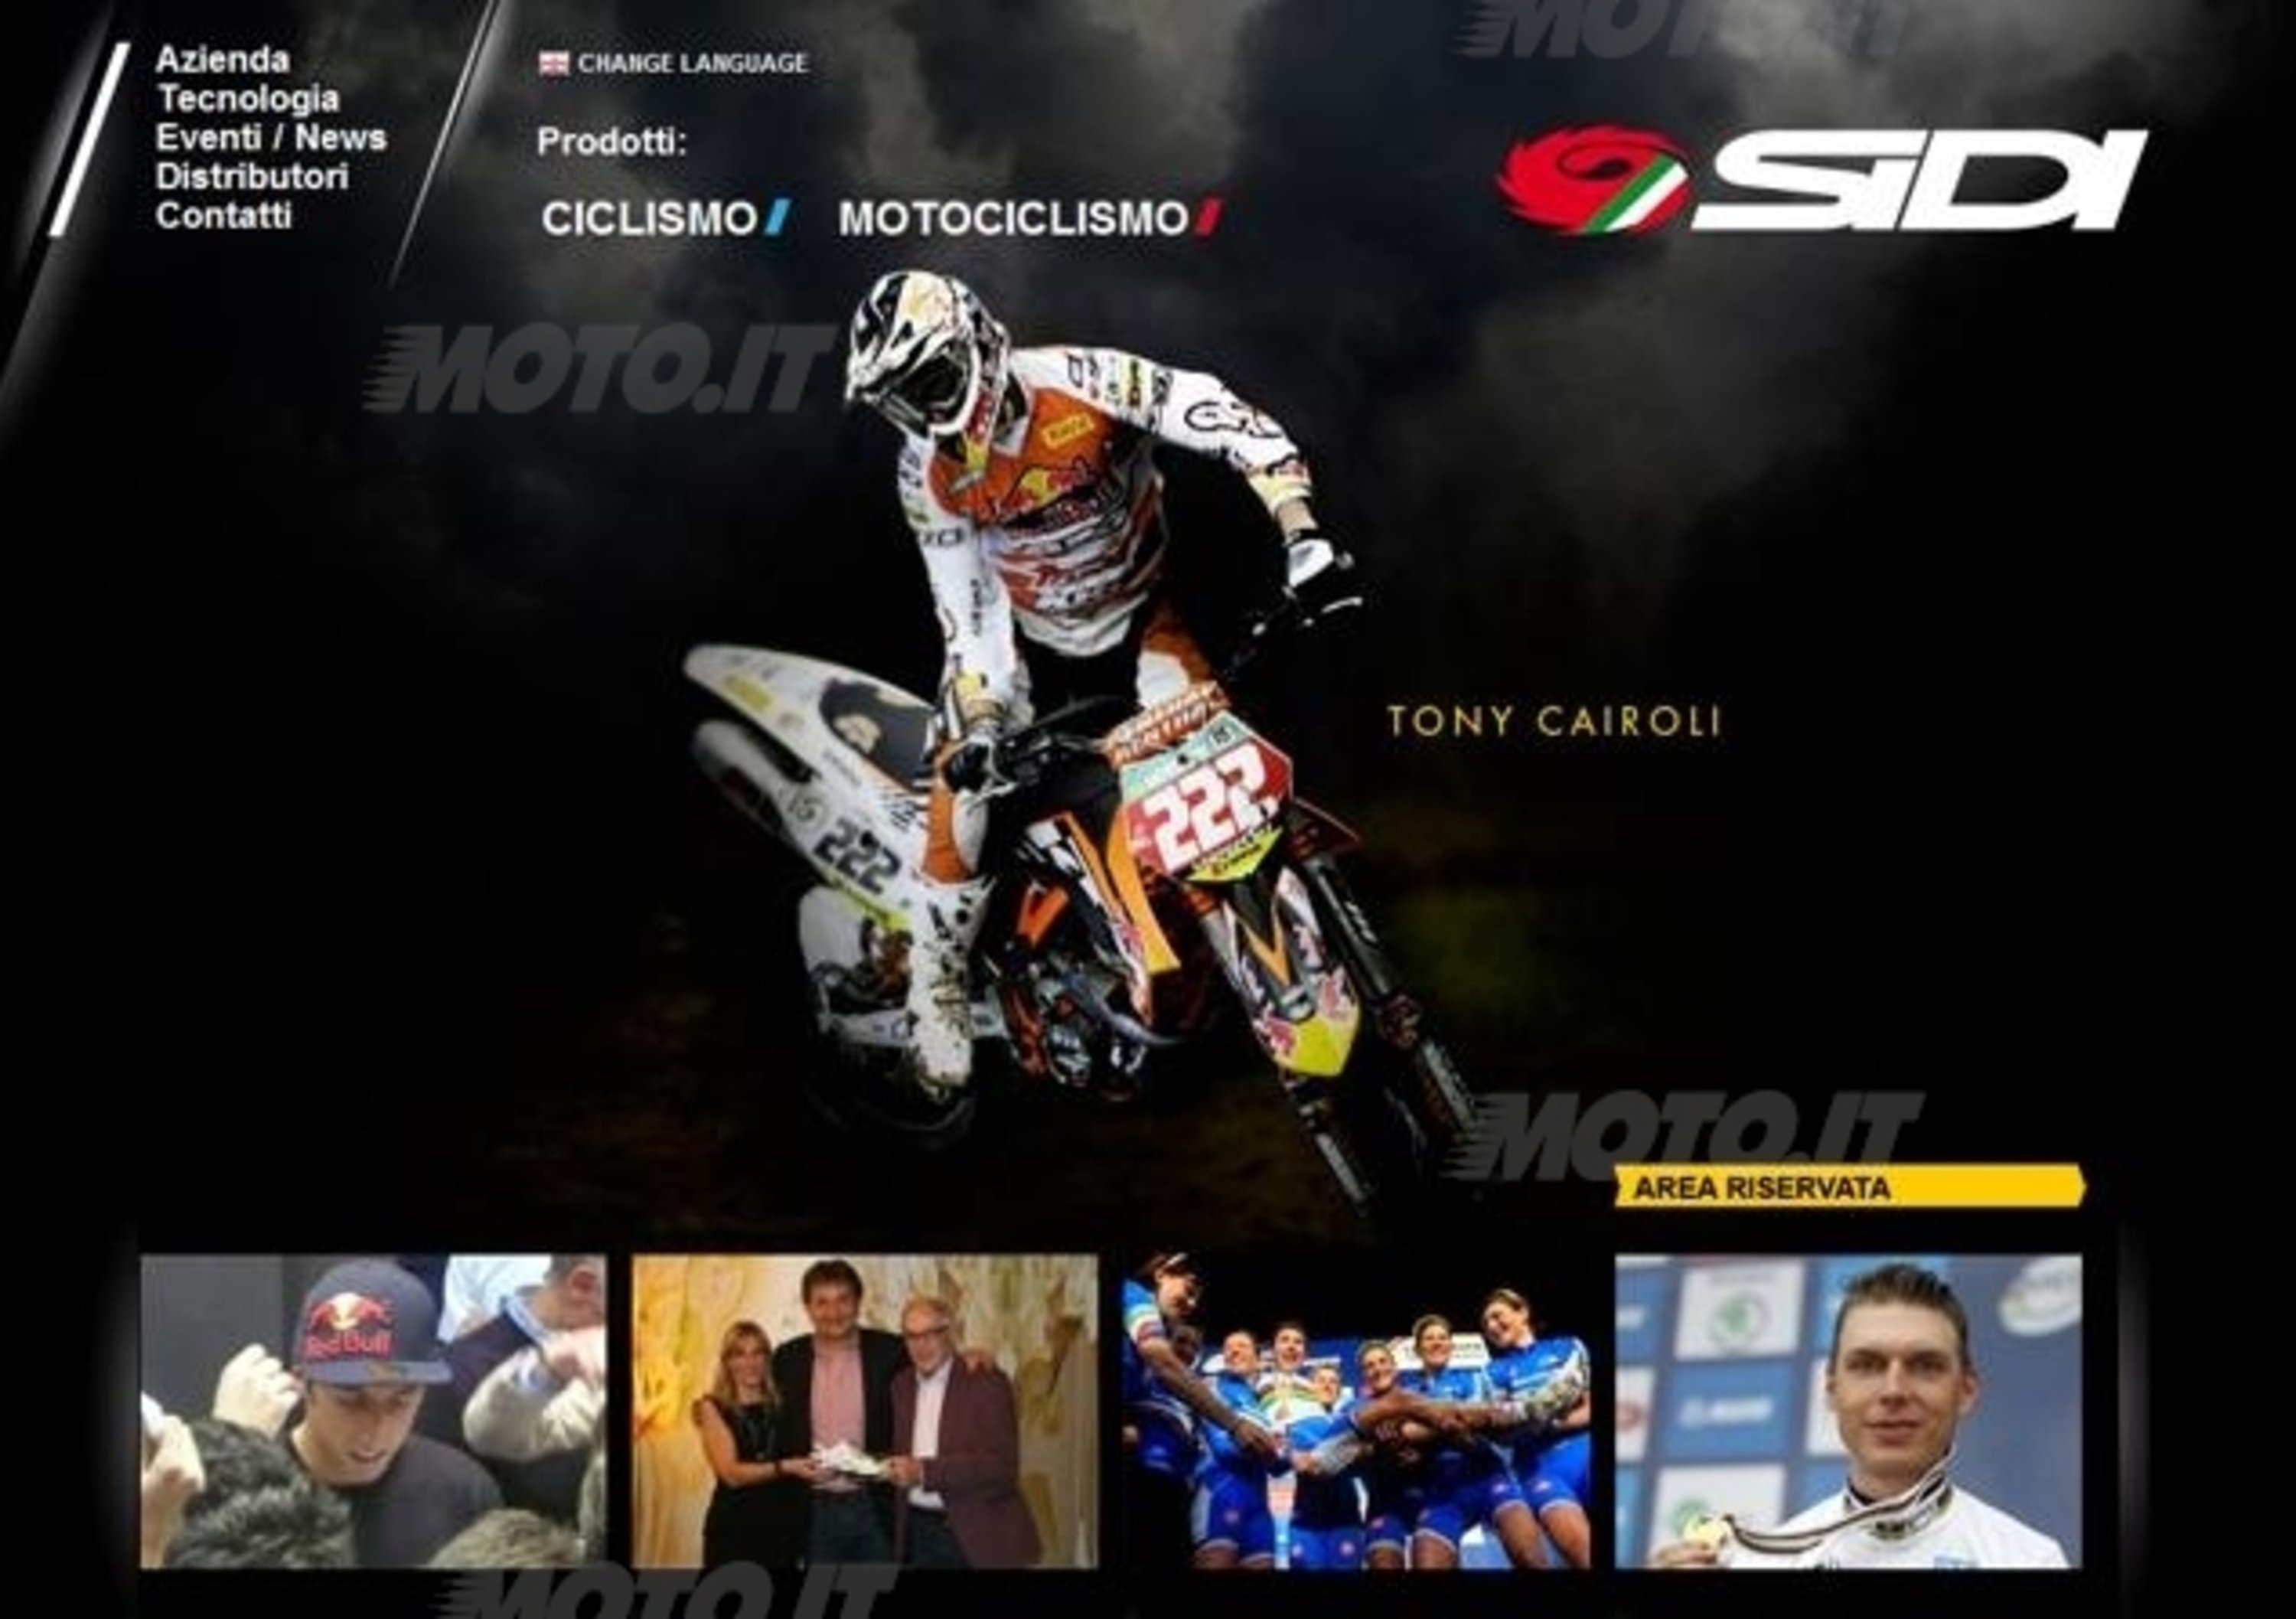 Nuovo sito Web per SIDI Sport